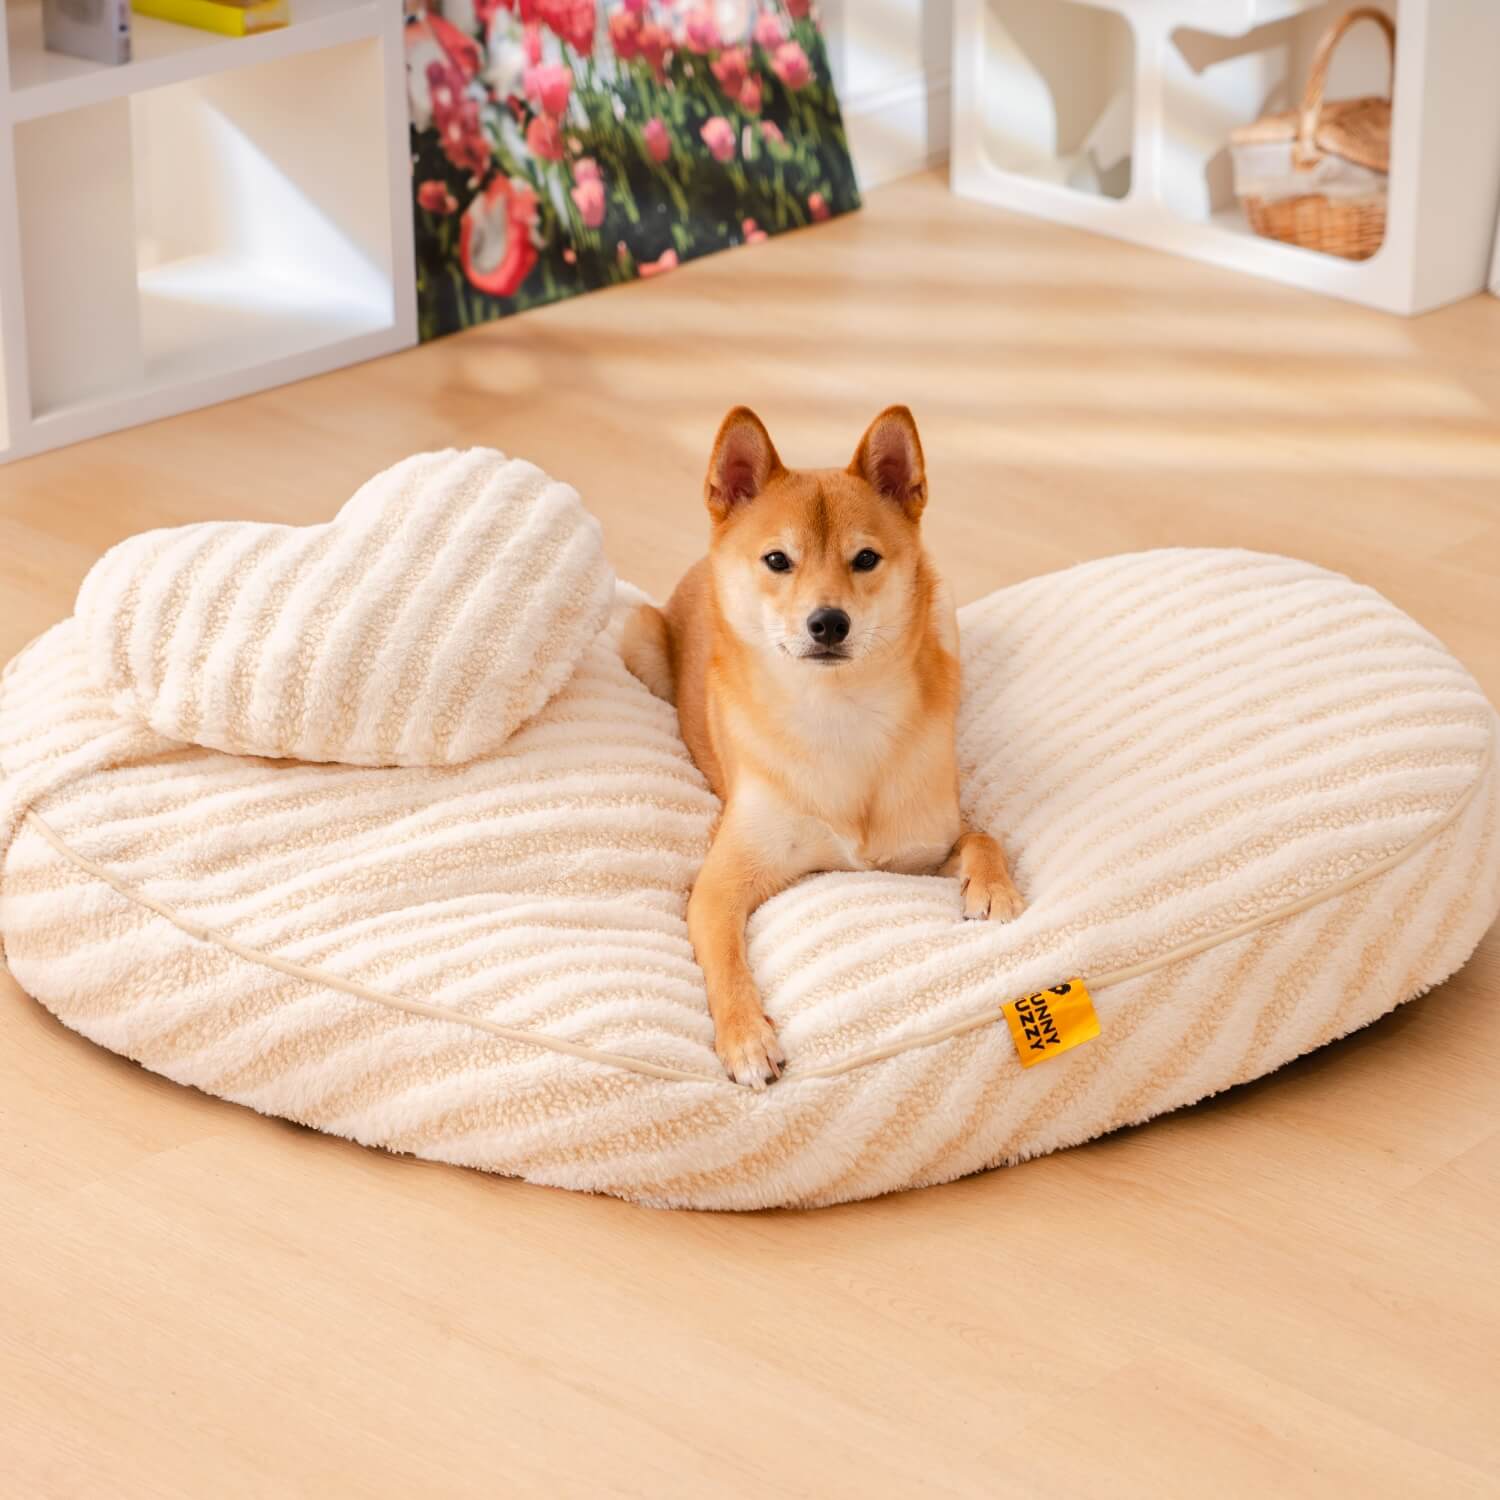 Coração de pelúcia fofo calmante com travesseiro cama para cães e gatos